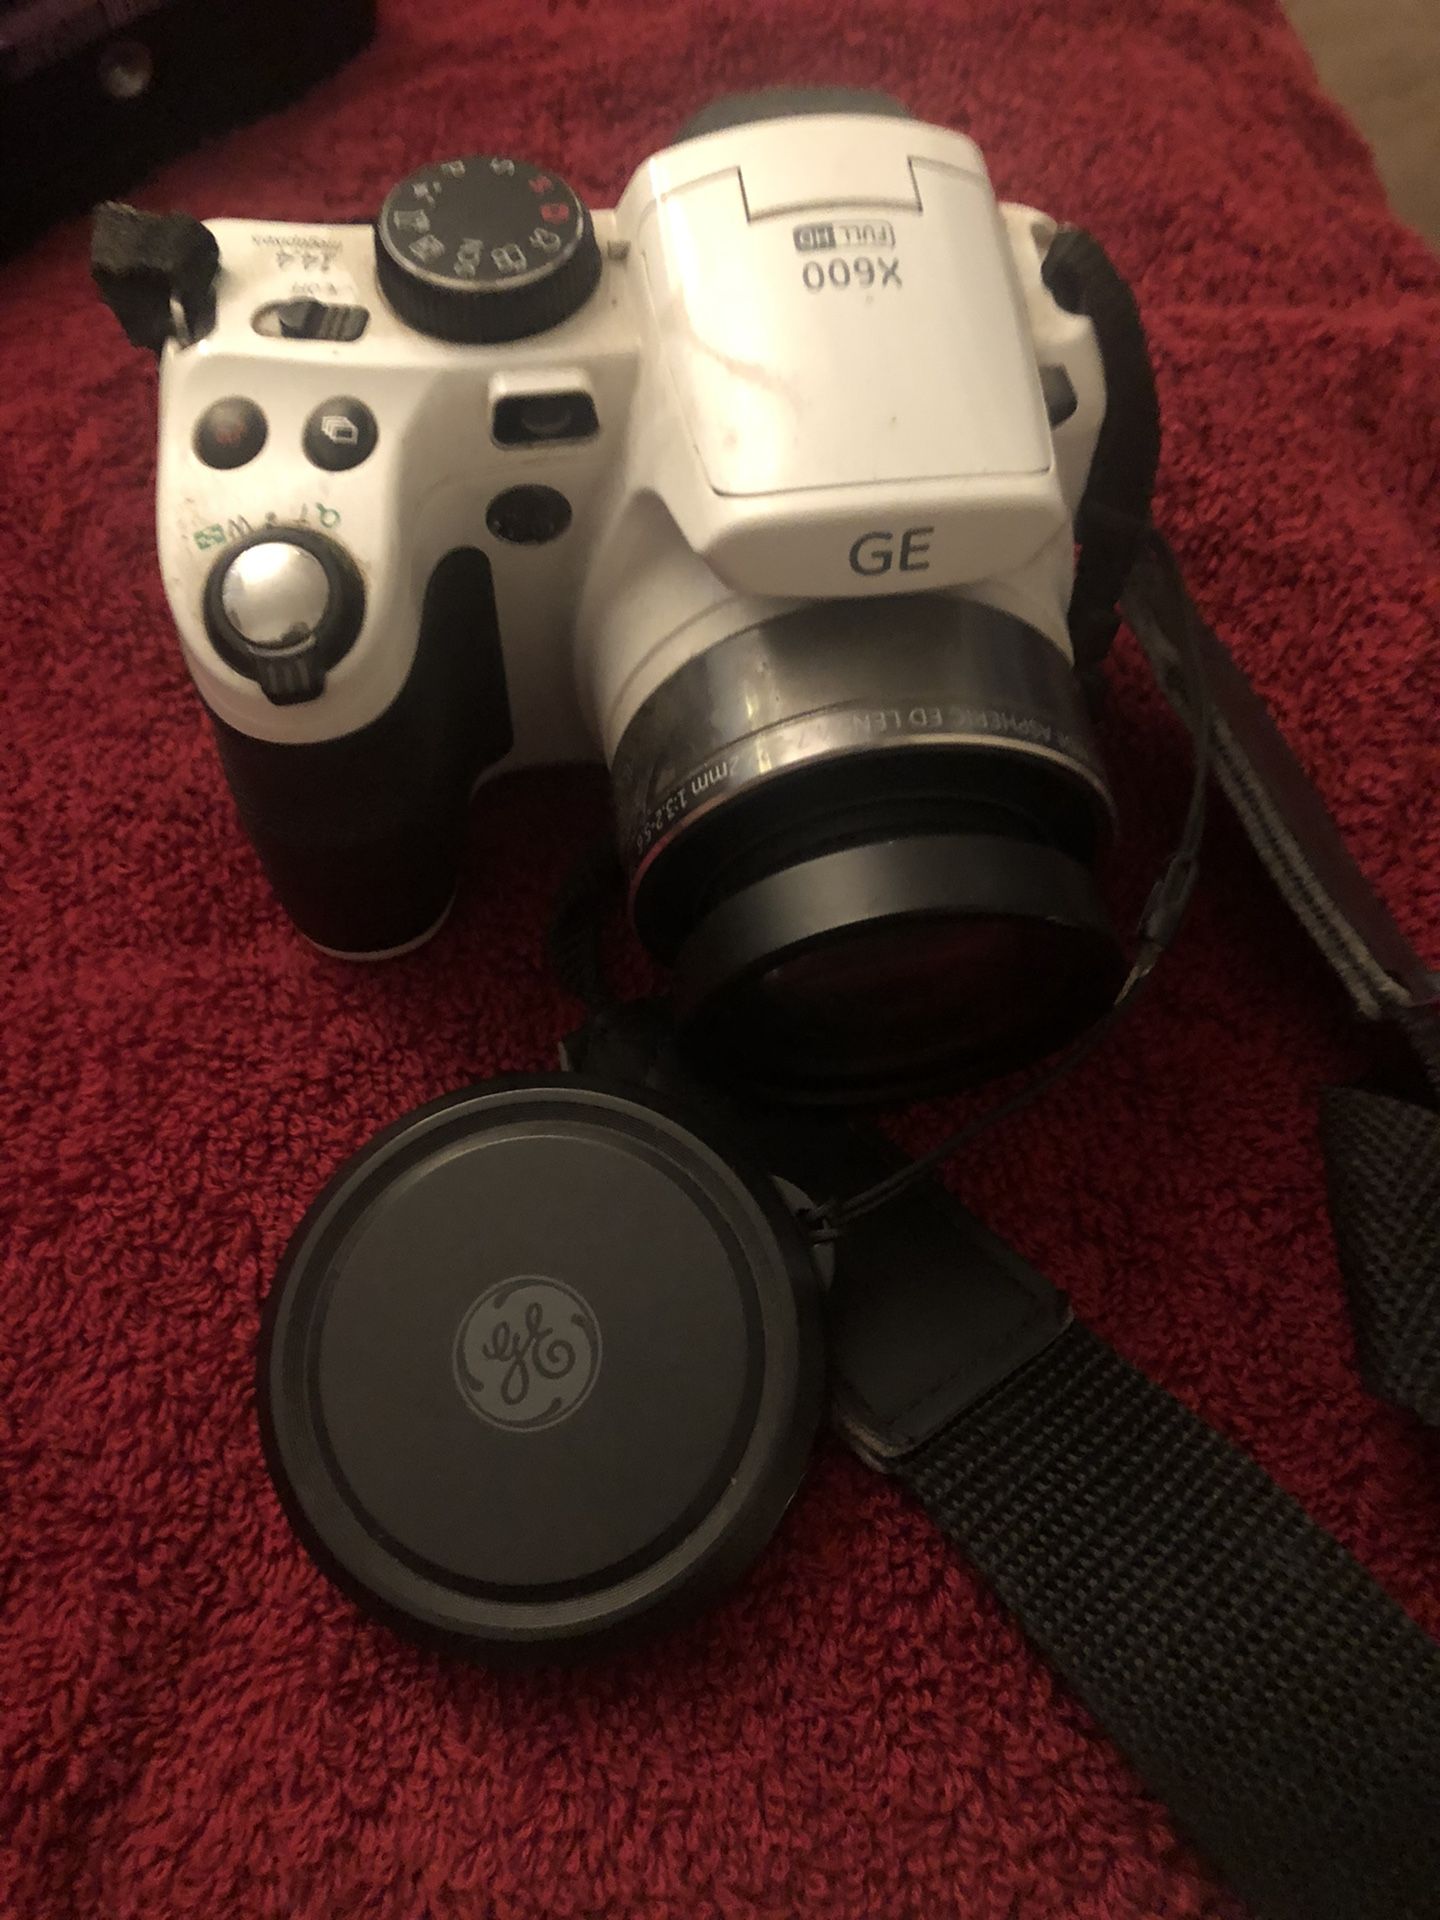 GE digital camera